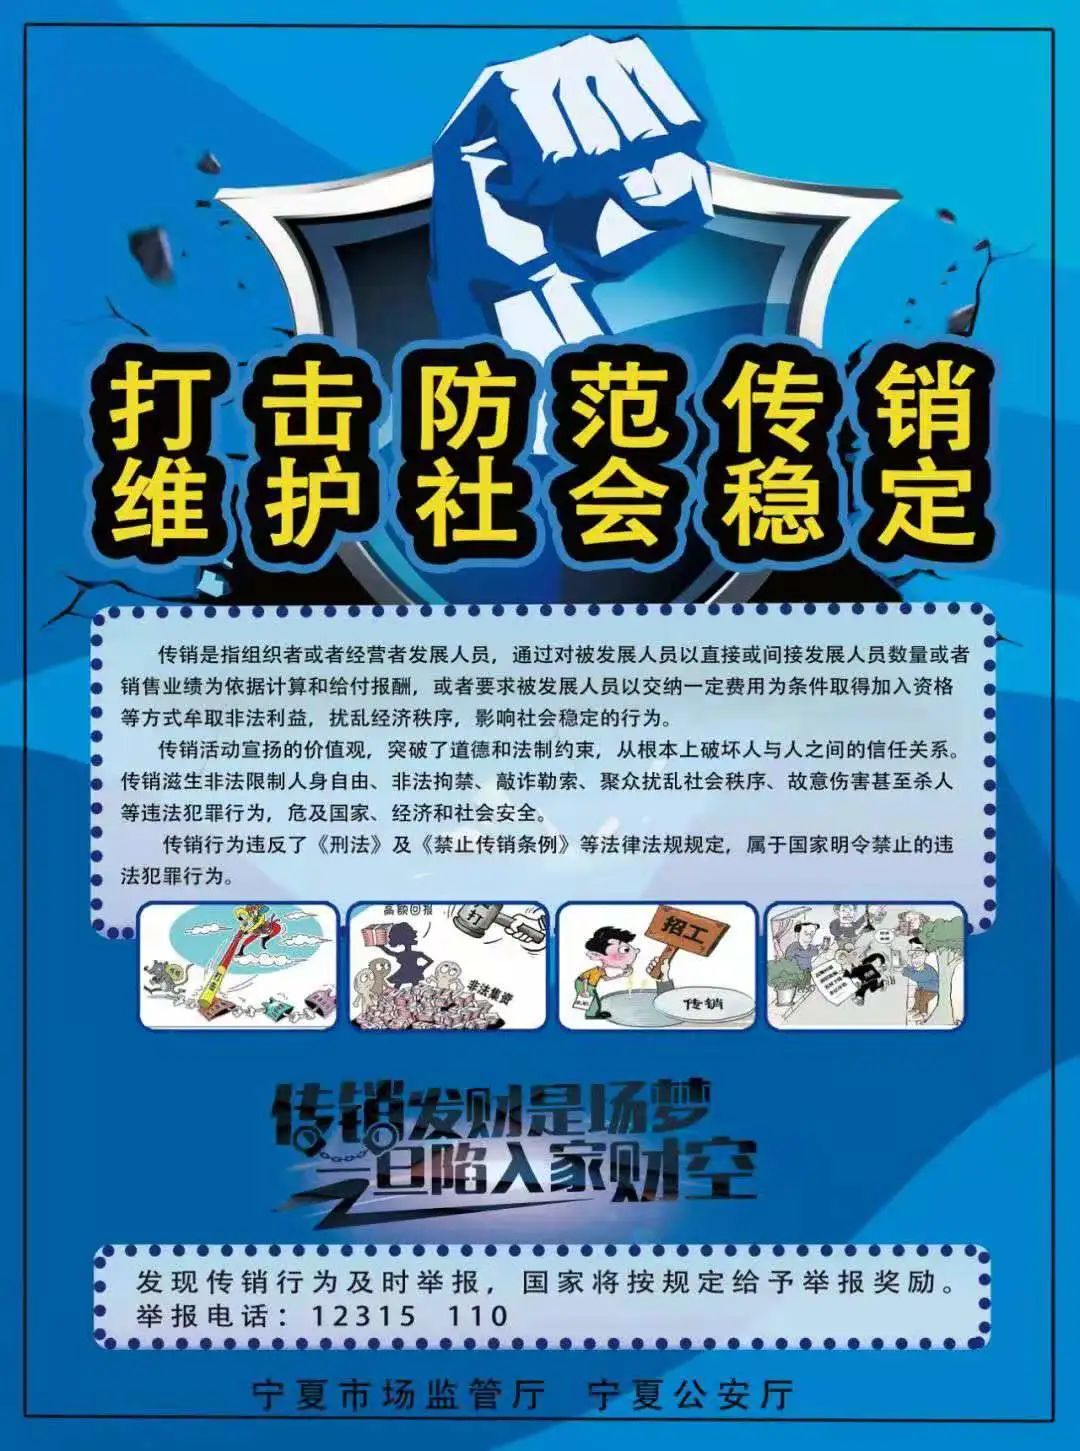 成安县市场监管局开展打击传销宣传活动_成安县人民政府